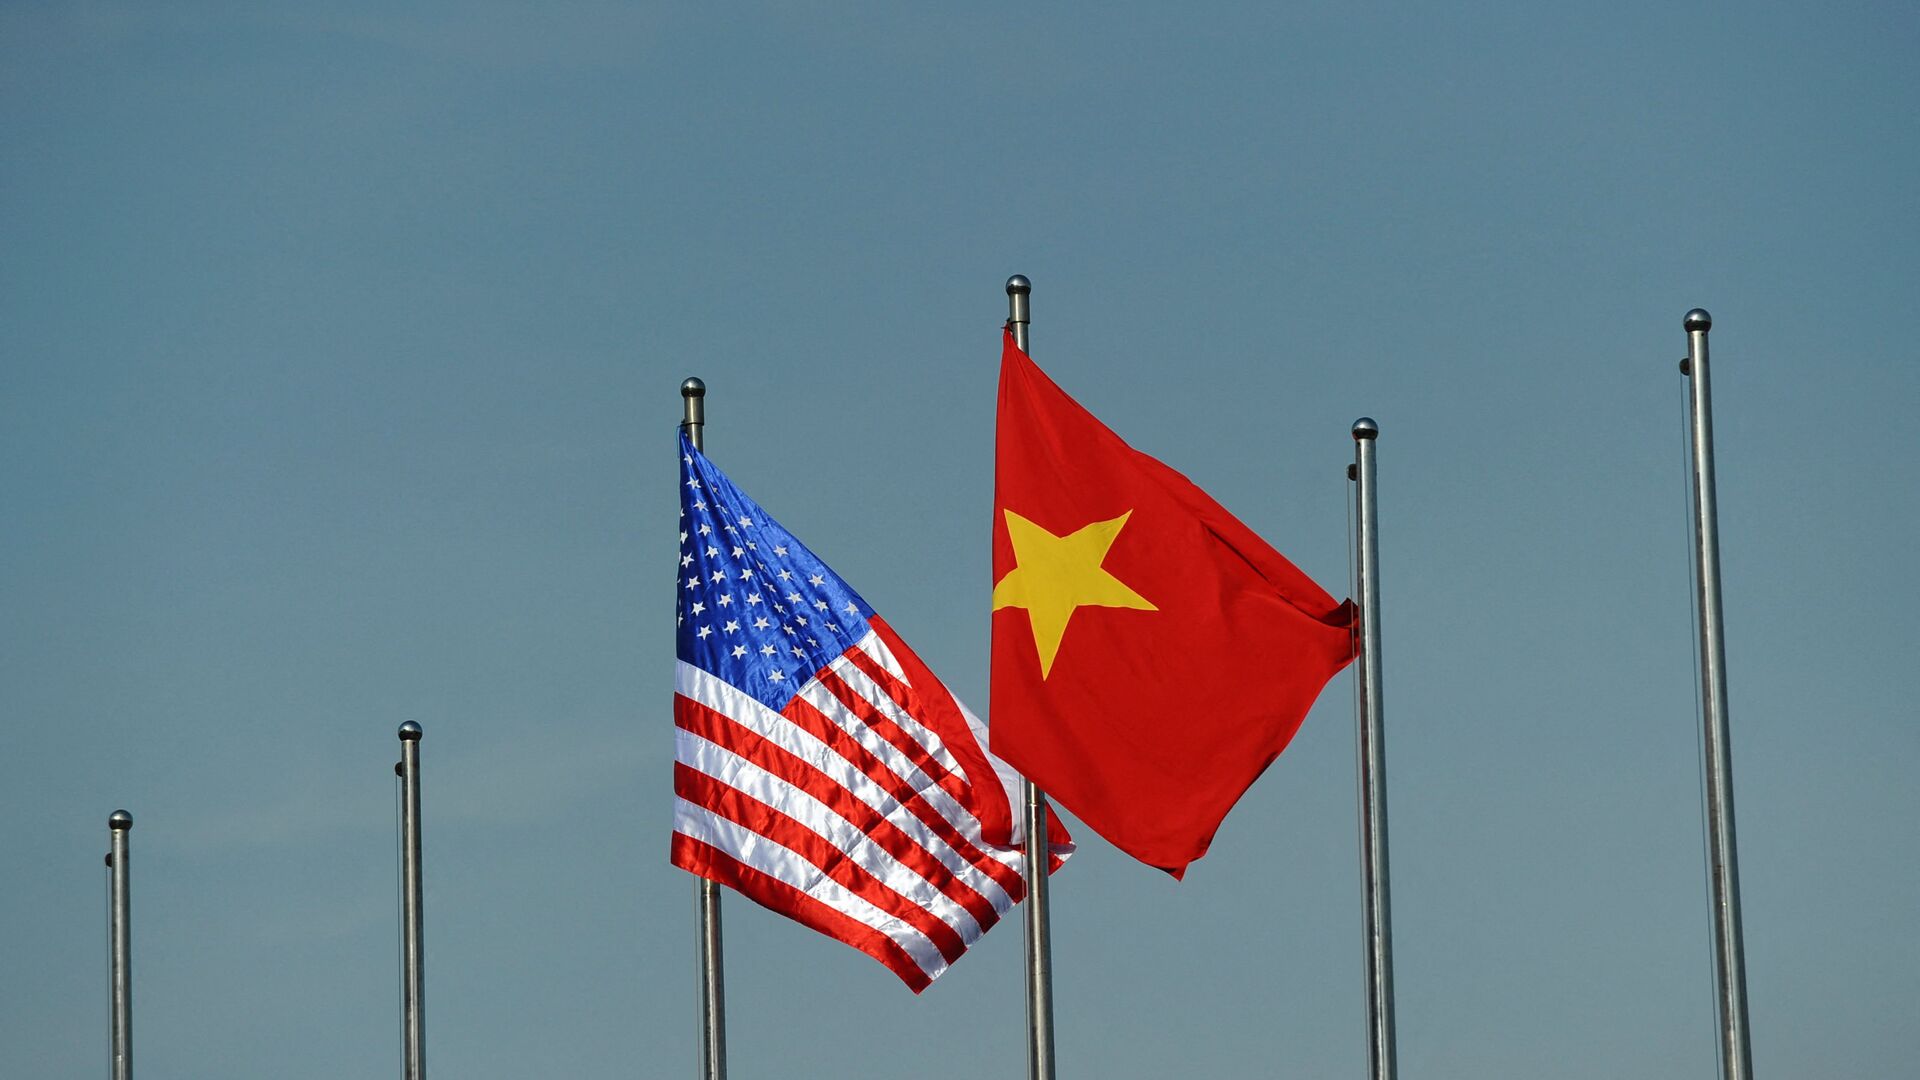 Quốc kỳ của Hoa Kỳ và Việt Nam. - Sputnik Việt Nam, 1920, 21.04.2022